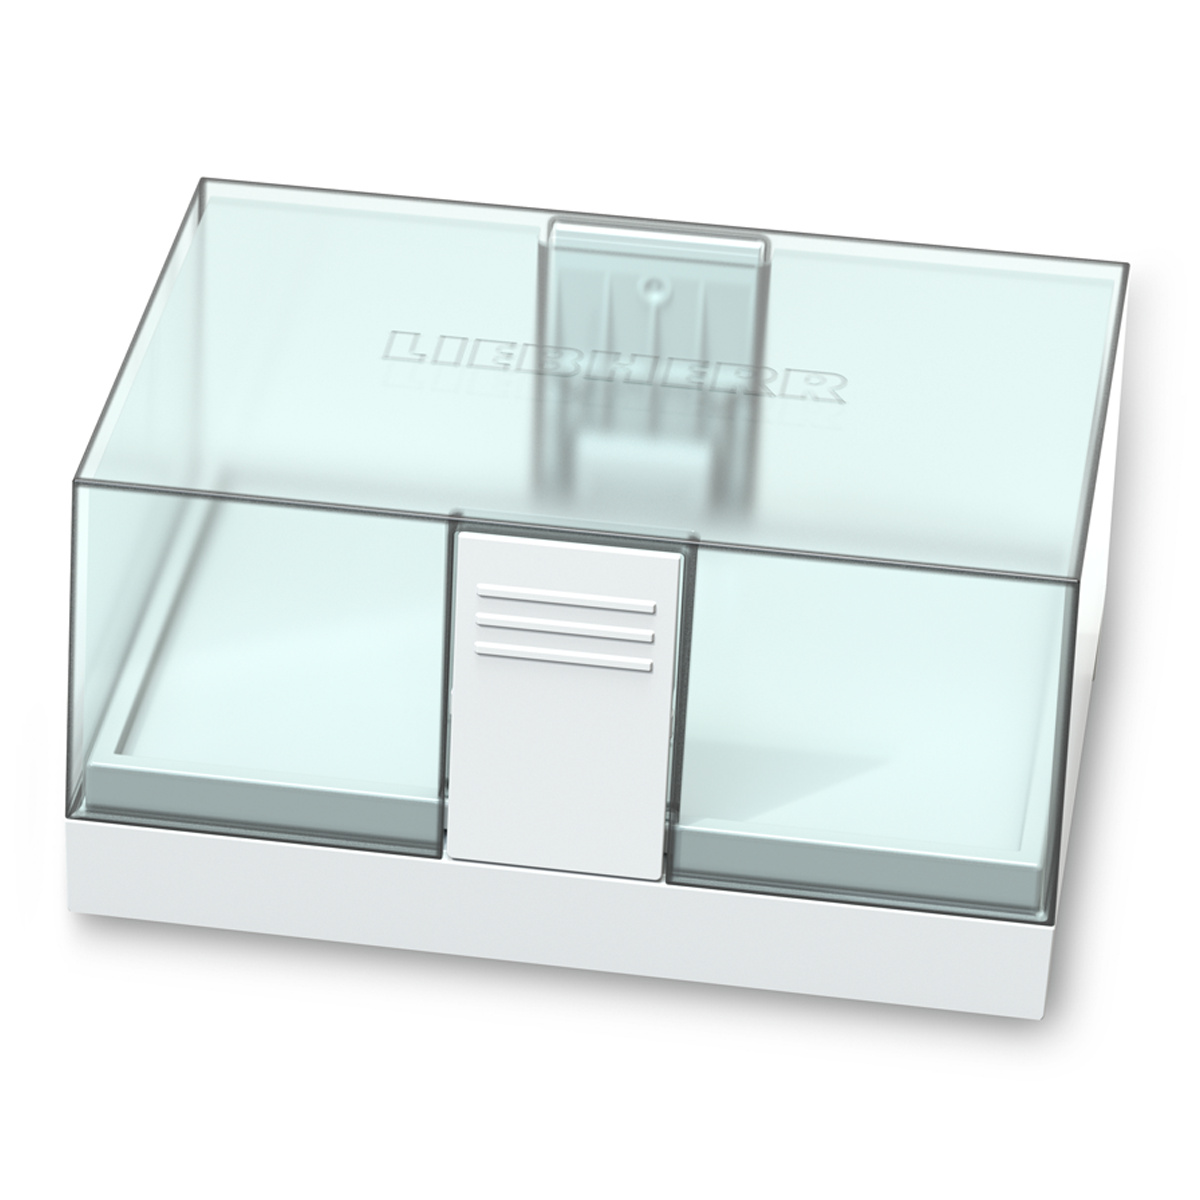 IRe 4021 Plus Integrierbarer Kühlschrank mit EasyFresh - Liebherr